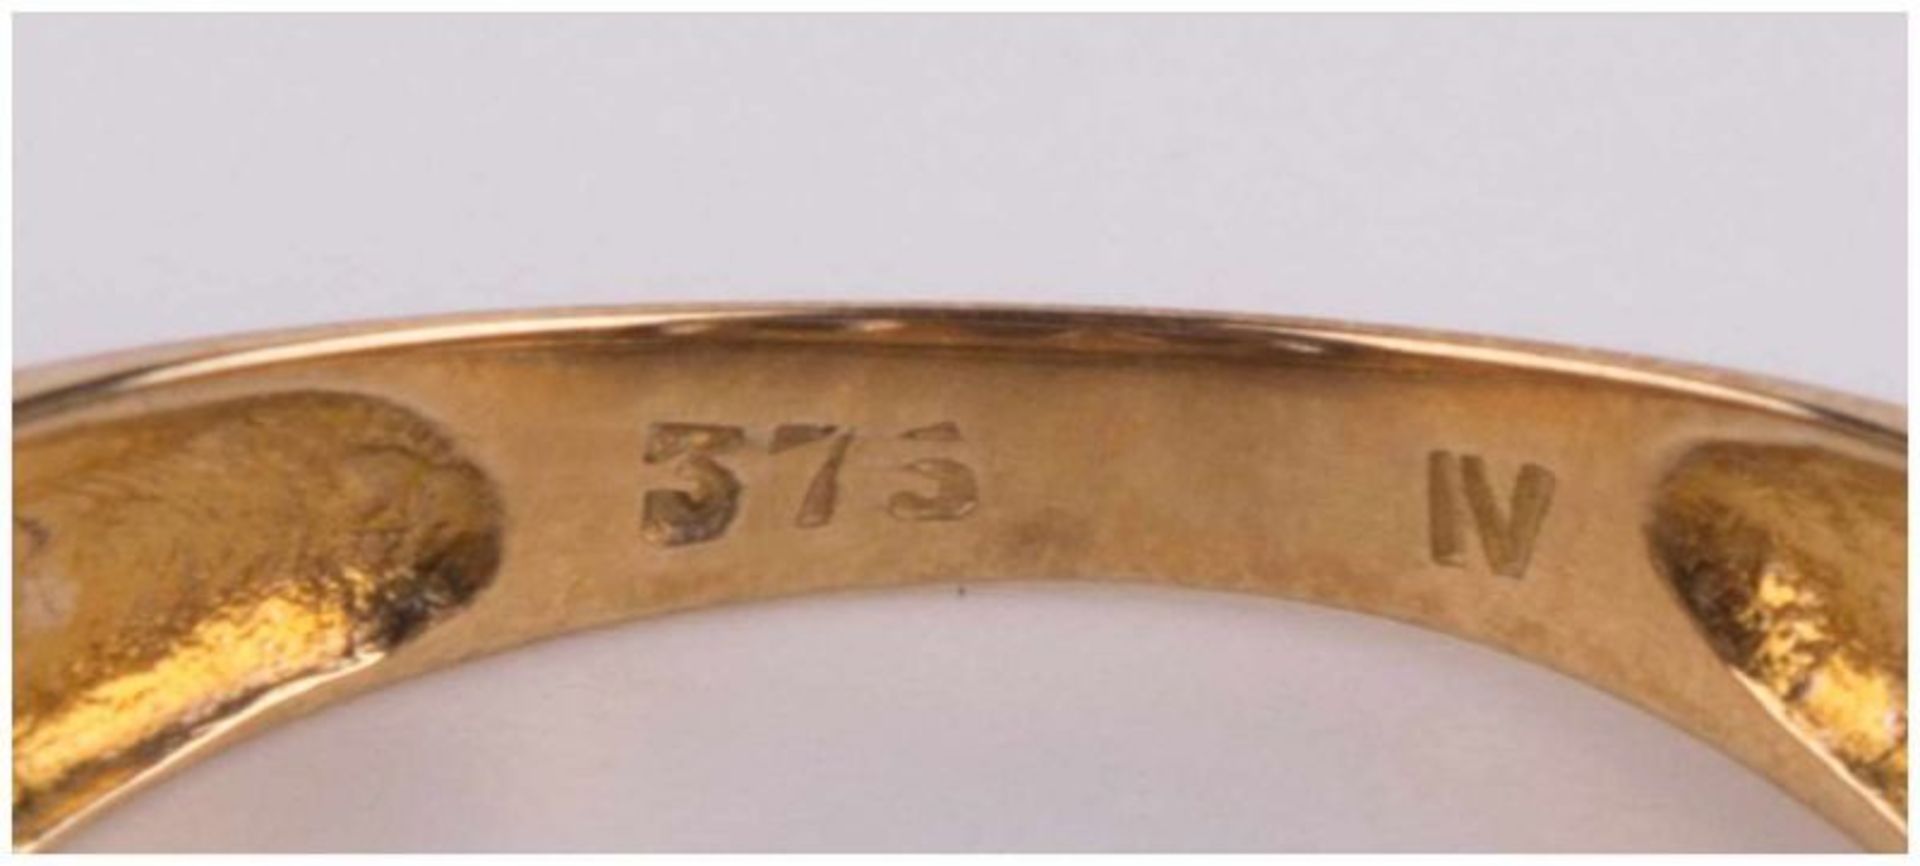 Tansanitring / Tanzanite gold ring - GG 375/000, besetzt mit 5 Steinen zusammen [...] - Bild 5 aus 8